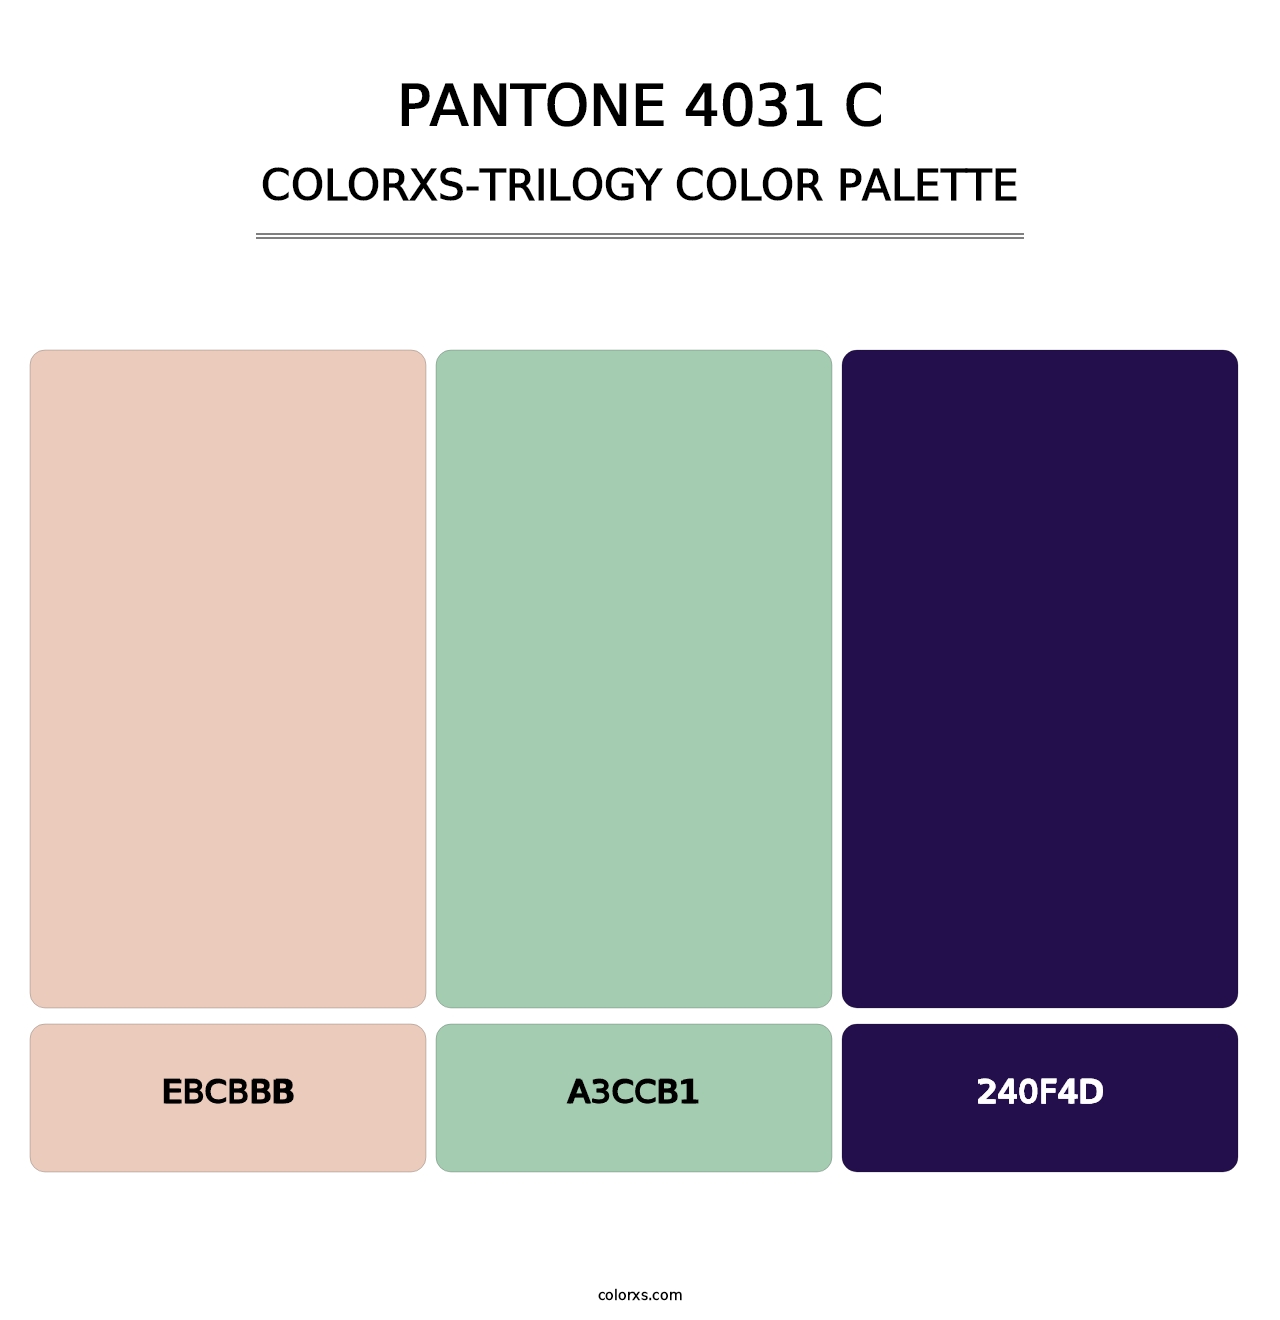 PANTONE 4031 C - Colorxs Trilogy Palette